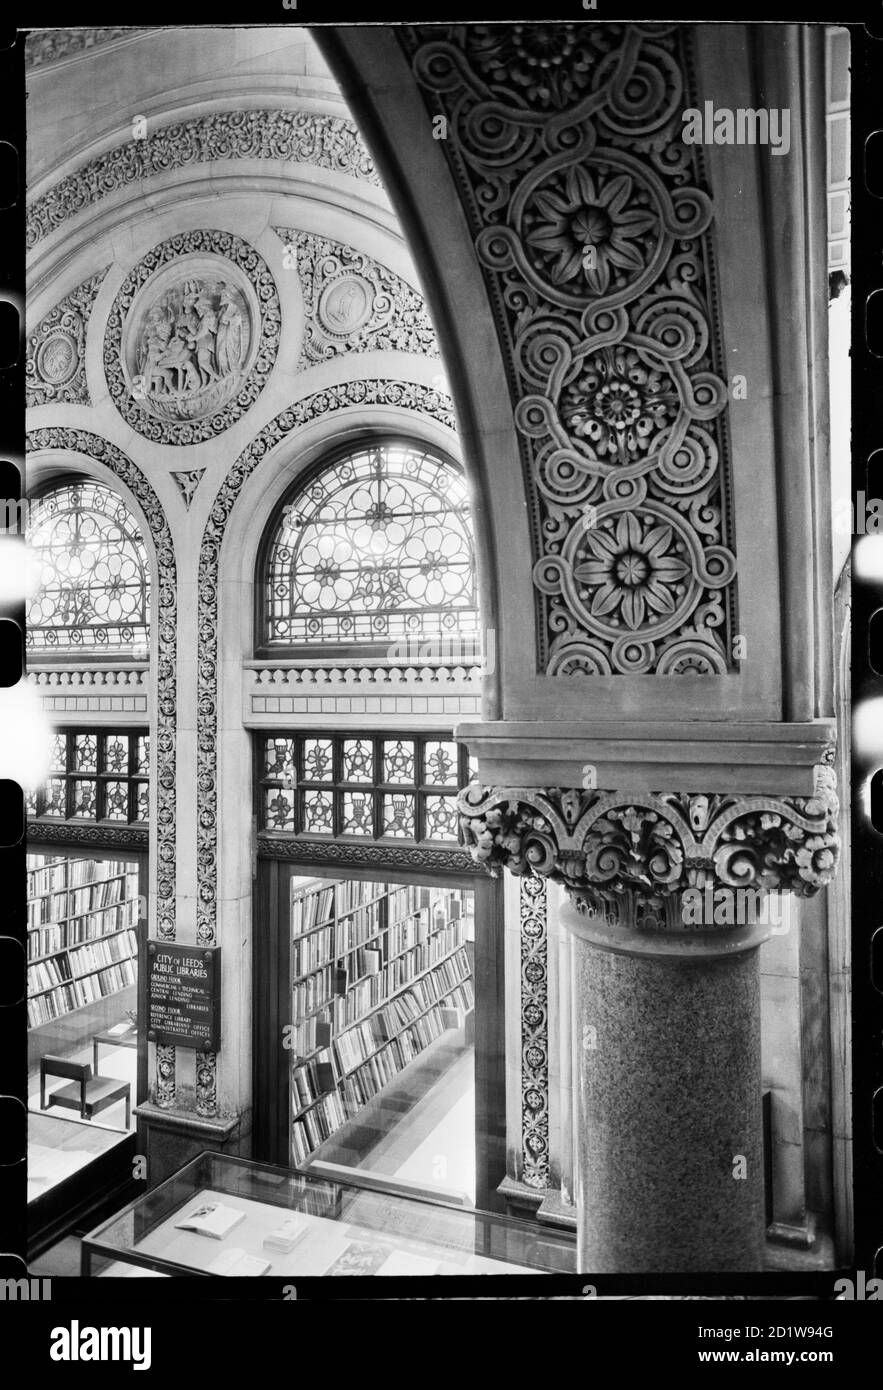 Interieur eines historischen Gebäudes, doppelbögiger Eingang zu einem Büchereiraum im Erdgeschoss, der die Unterseite eines kunstvoll geschnitzten Bogens zeigt Stockfoto